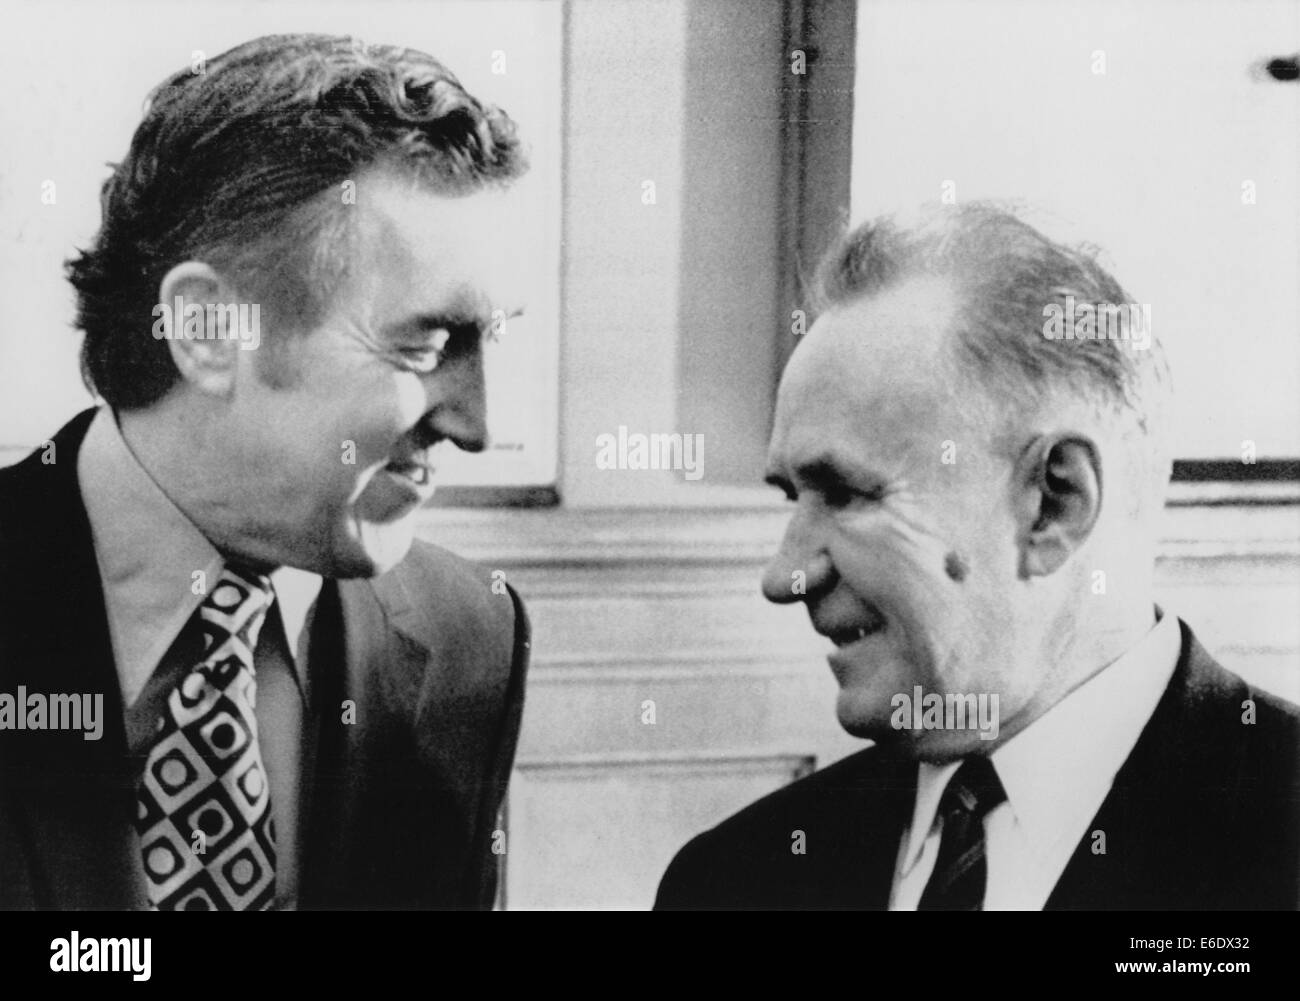 Stati Uniti Il senatore Edmund Muskie parlando con il Premier sovietico Alexei Kosygin, il Cremlino di Mosca, Unione Sovietica, Gennaio 1971 Foto Stock